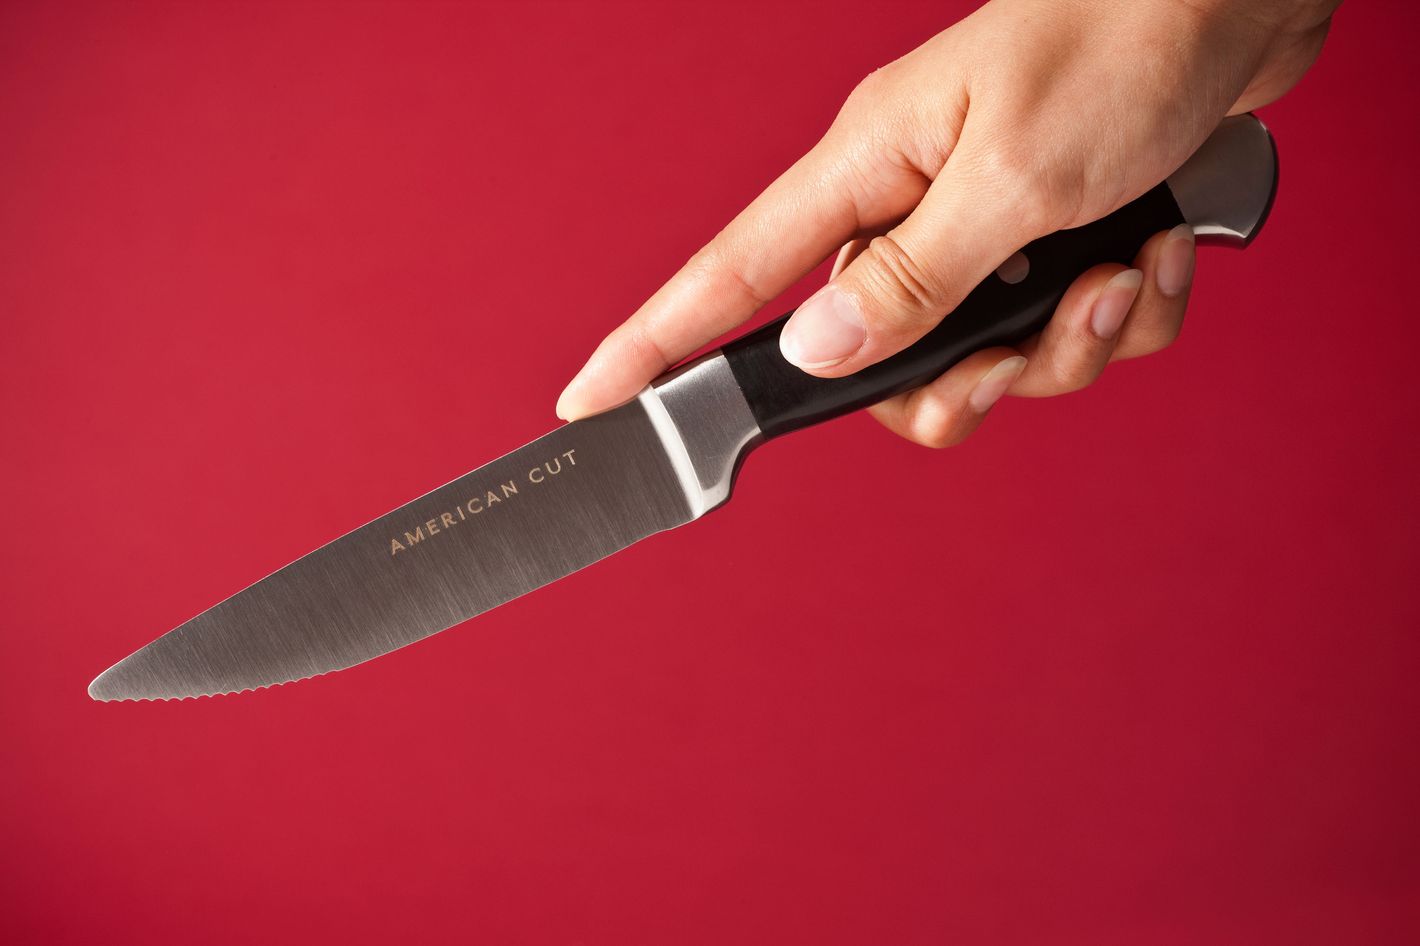 Steak Knives for Restaurants